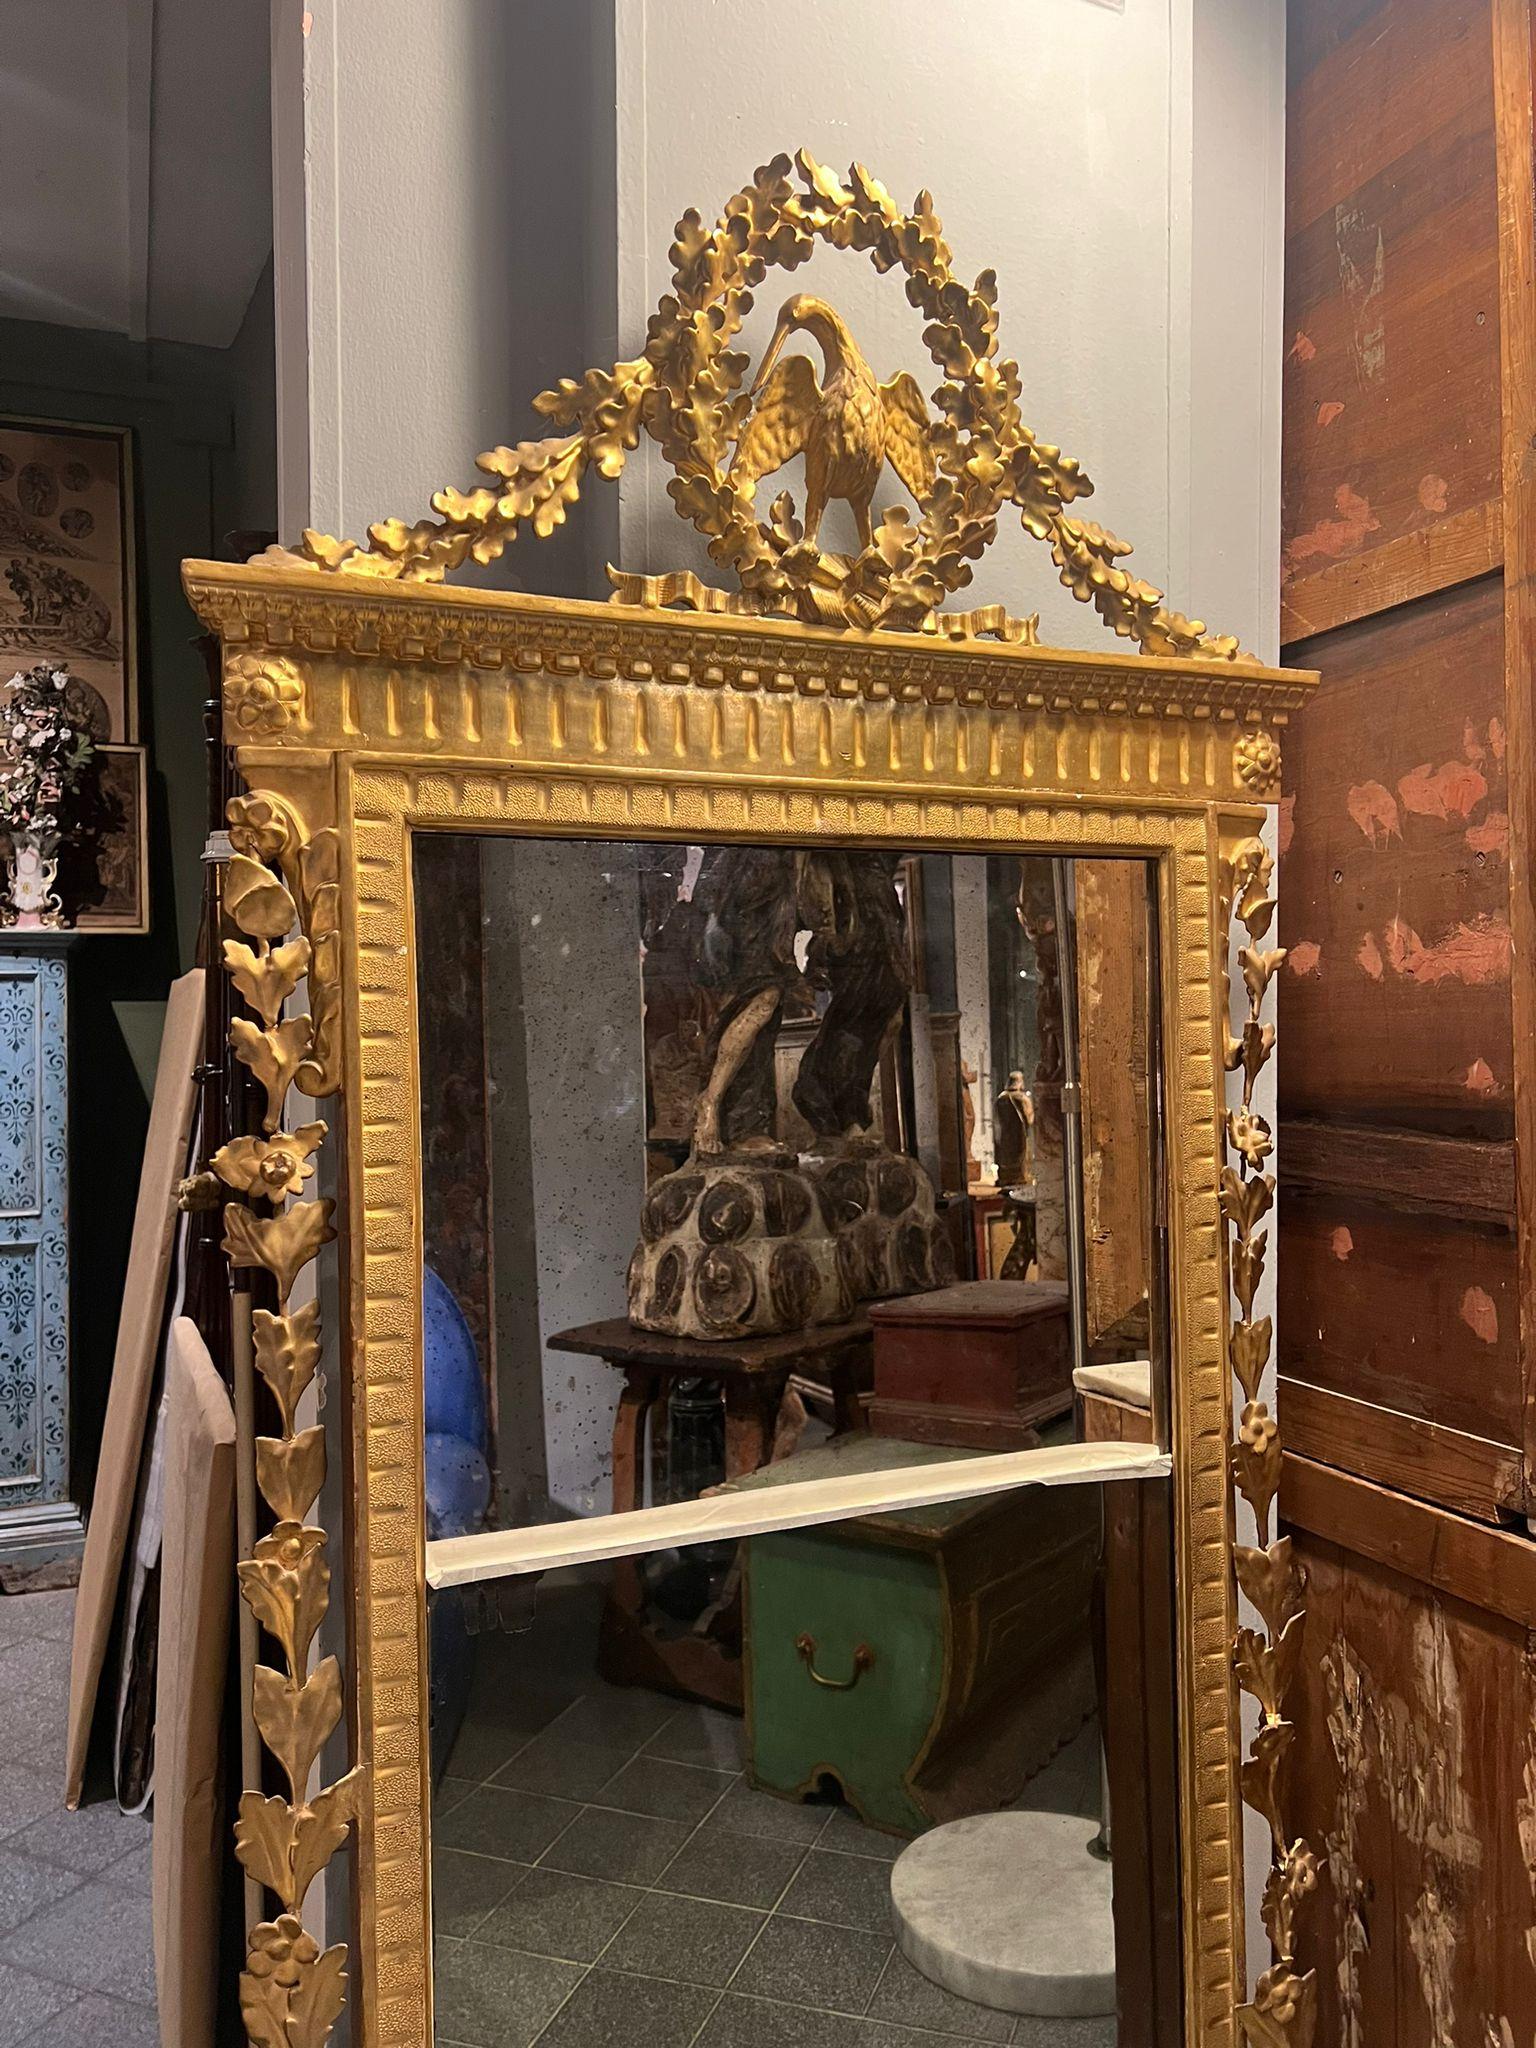 Magnifique miroir en bois sculpté et doré, datant du tout début du XVIIIe siècle et originaire de Livourne. 

Les dorures et les sculptures de la cimaise sont très raffinées. Le miroir, monté en deux parties, constitue un élément particulier.